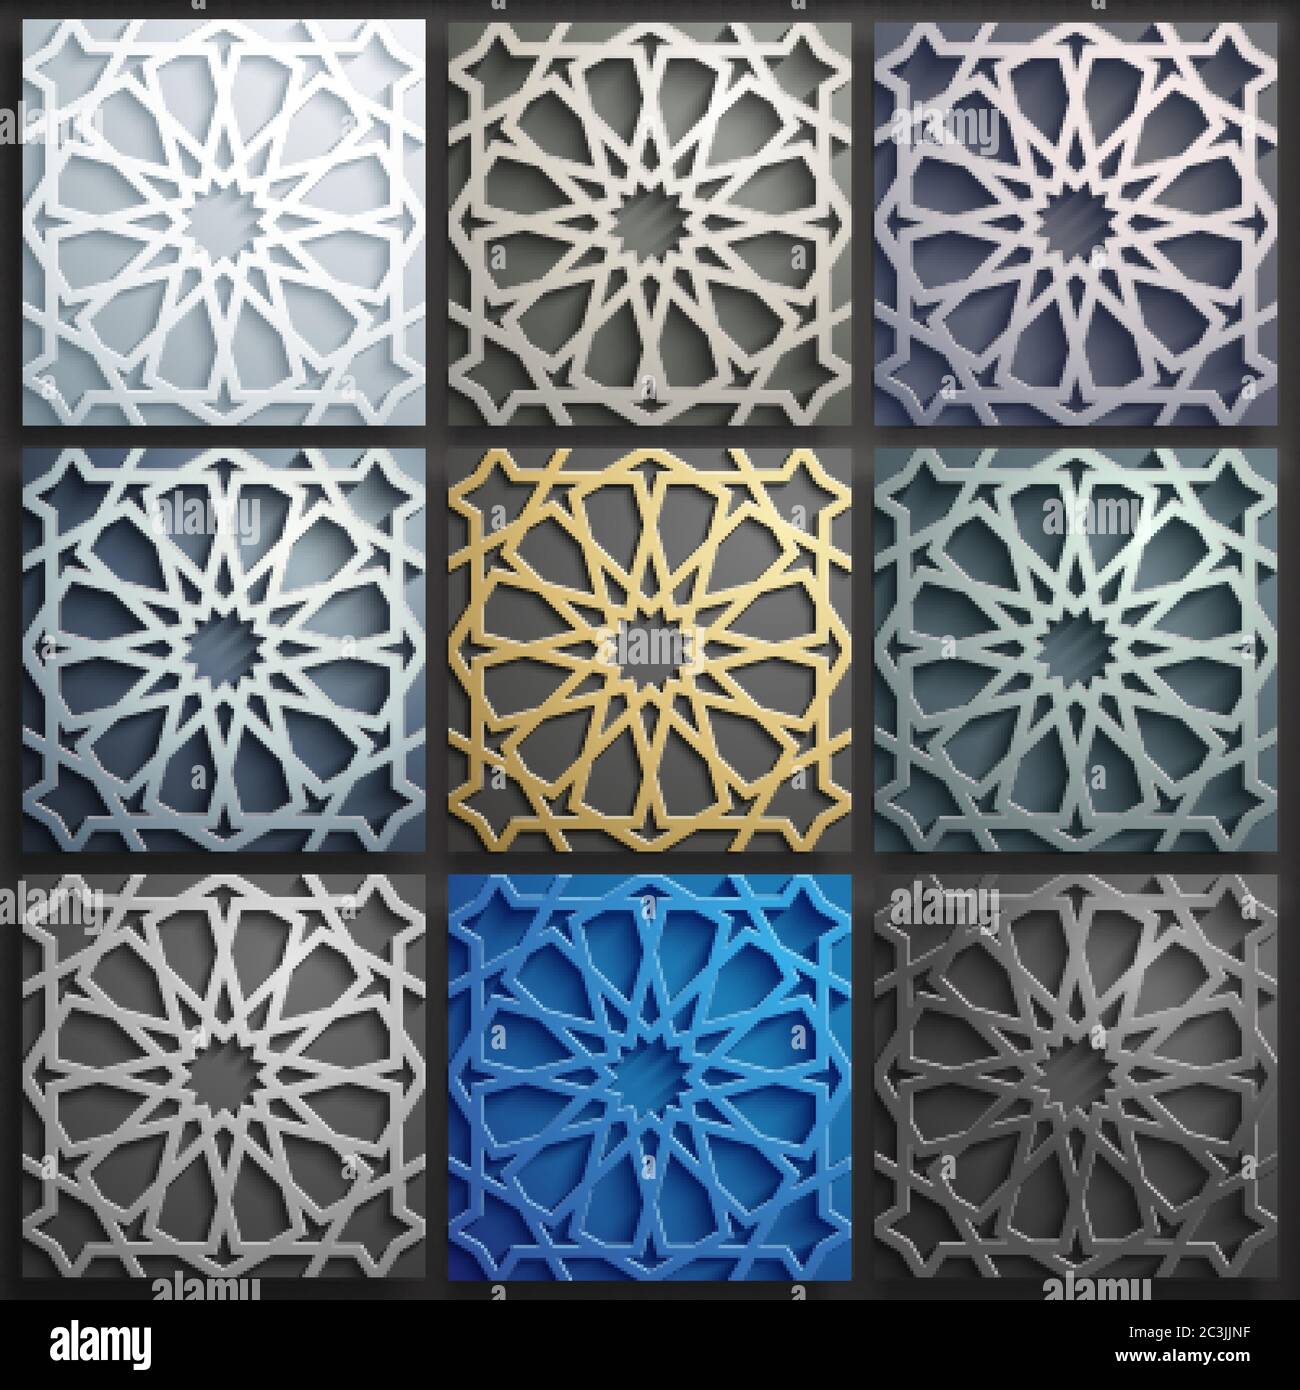 Bộ mẫu Họa tiết Hồi giáo 3D Vector sẽ là sự lựa chọn hoàn hảo cho những ai yêu thích họa tiết Hồi giáo đầy màu sắc và sống động. Những trang trí Ả Rập trừu tượng đầy tinh tế khiến cho bất kỳ ai cũng không thể rời mắt được. Hãy từ từ thưởng thức và tận hưởng sự đẹp đẽ này!